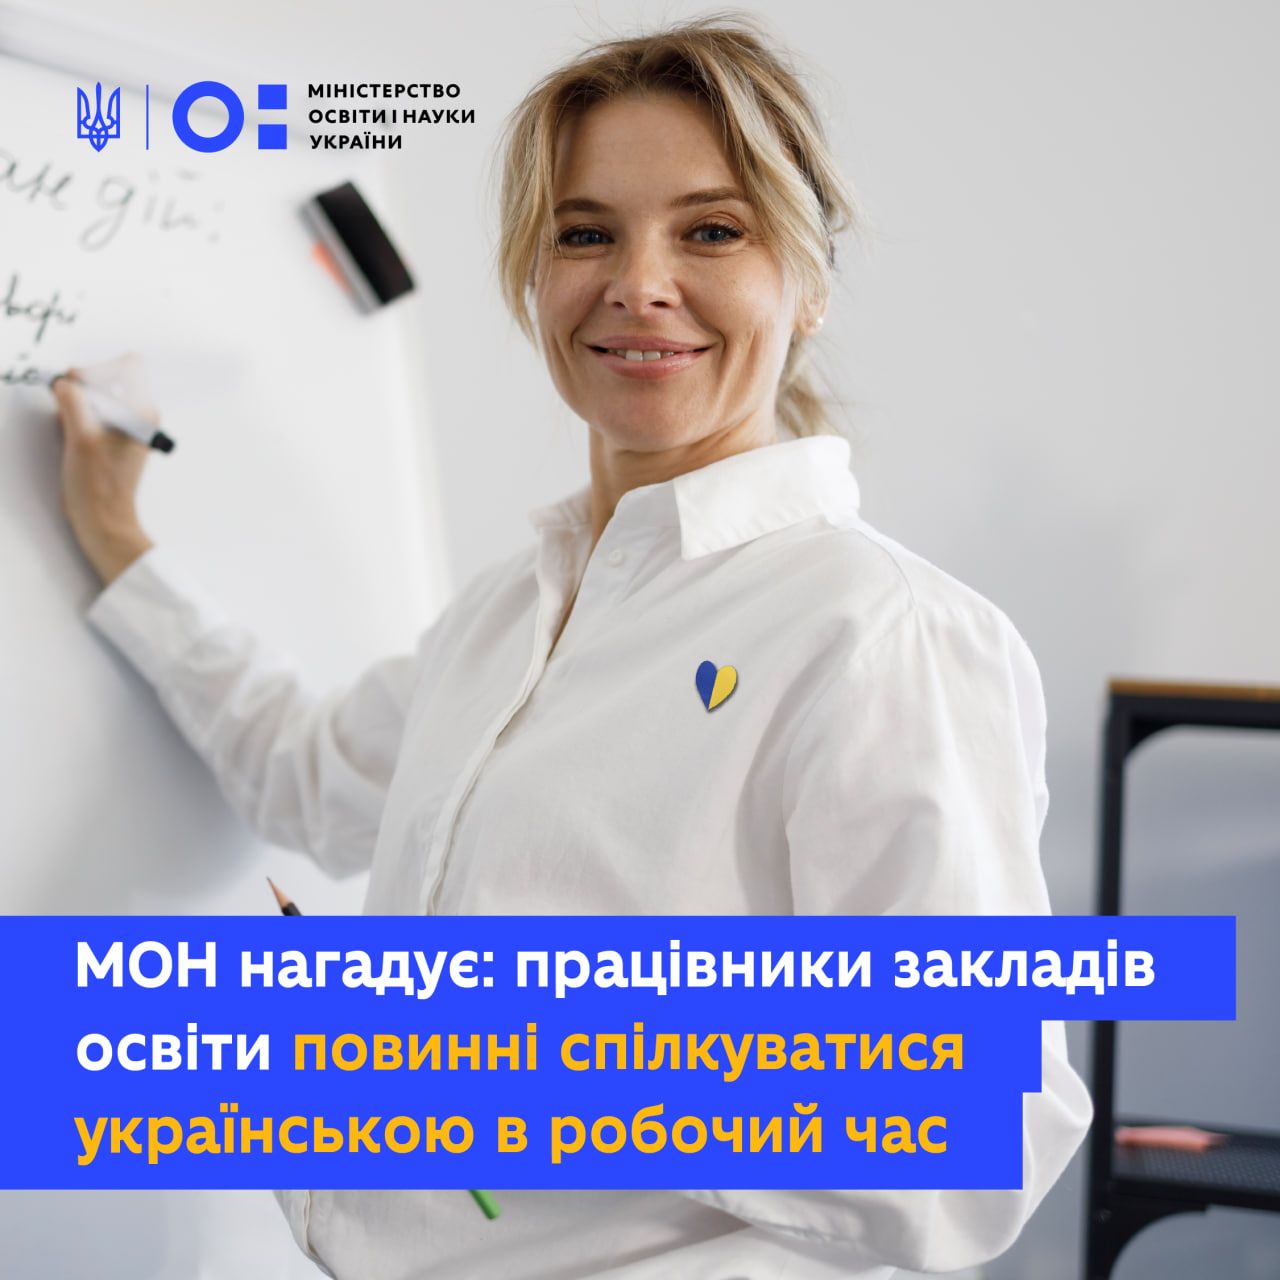 Науково-педагогічні, педагогічні й інші працівники закладів освіти повинні використовувати українську мову в робочий час.